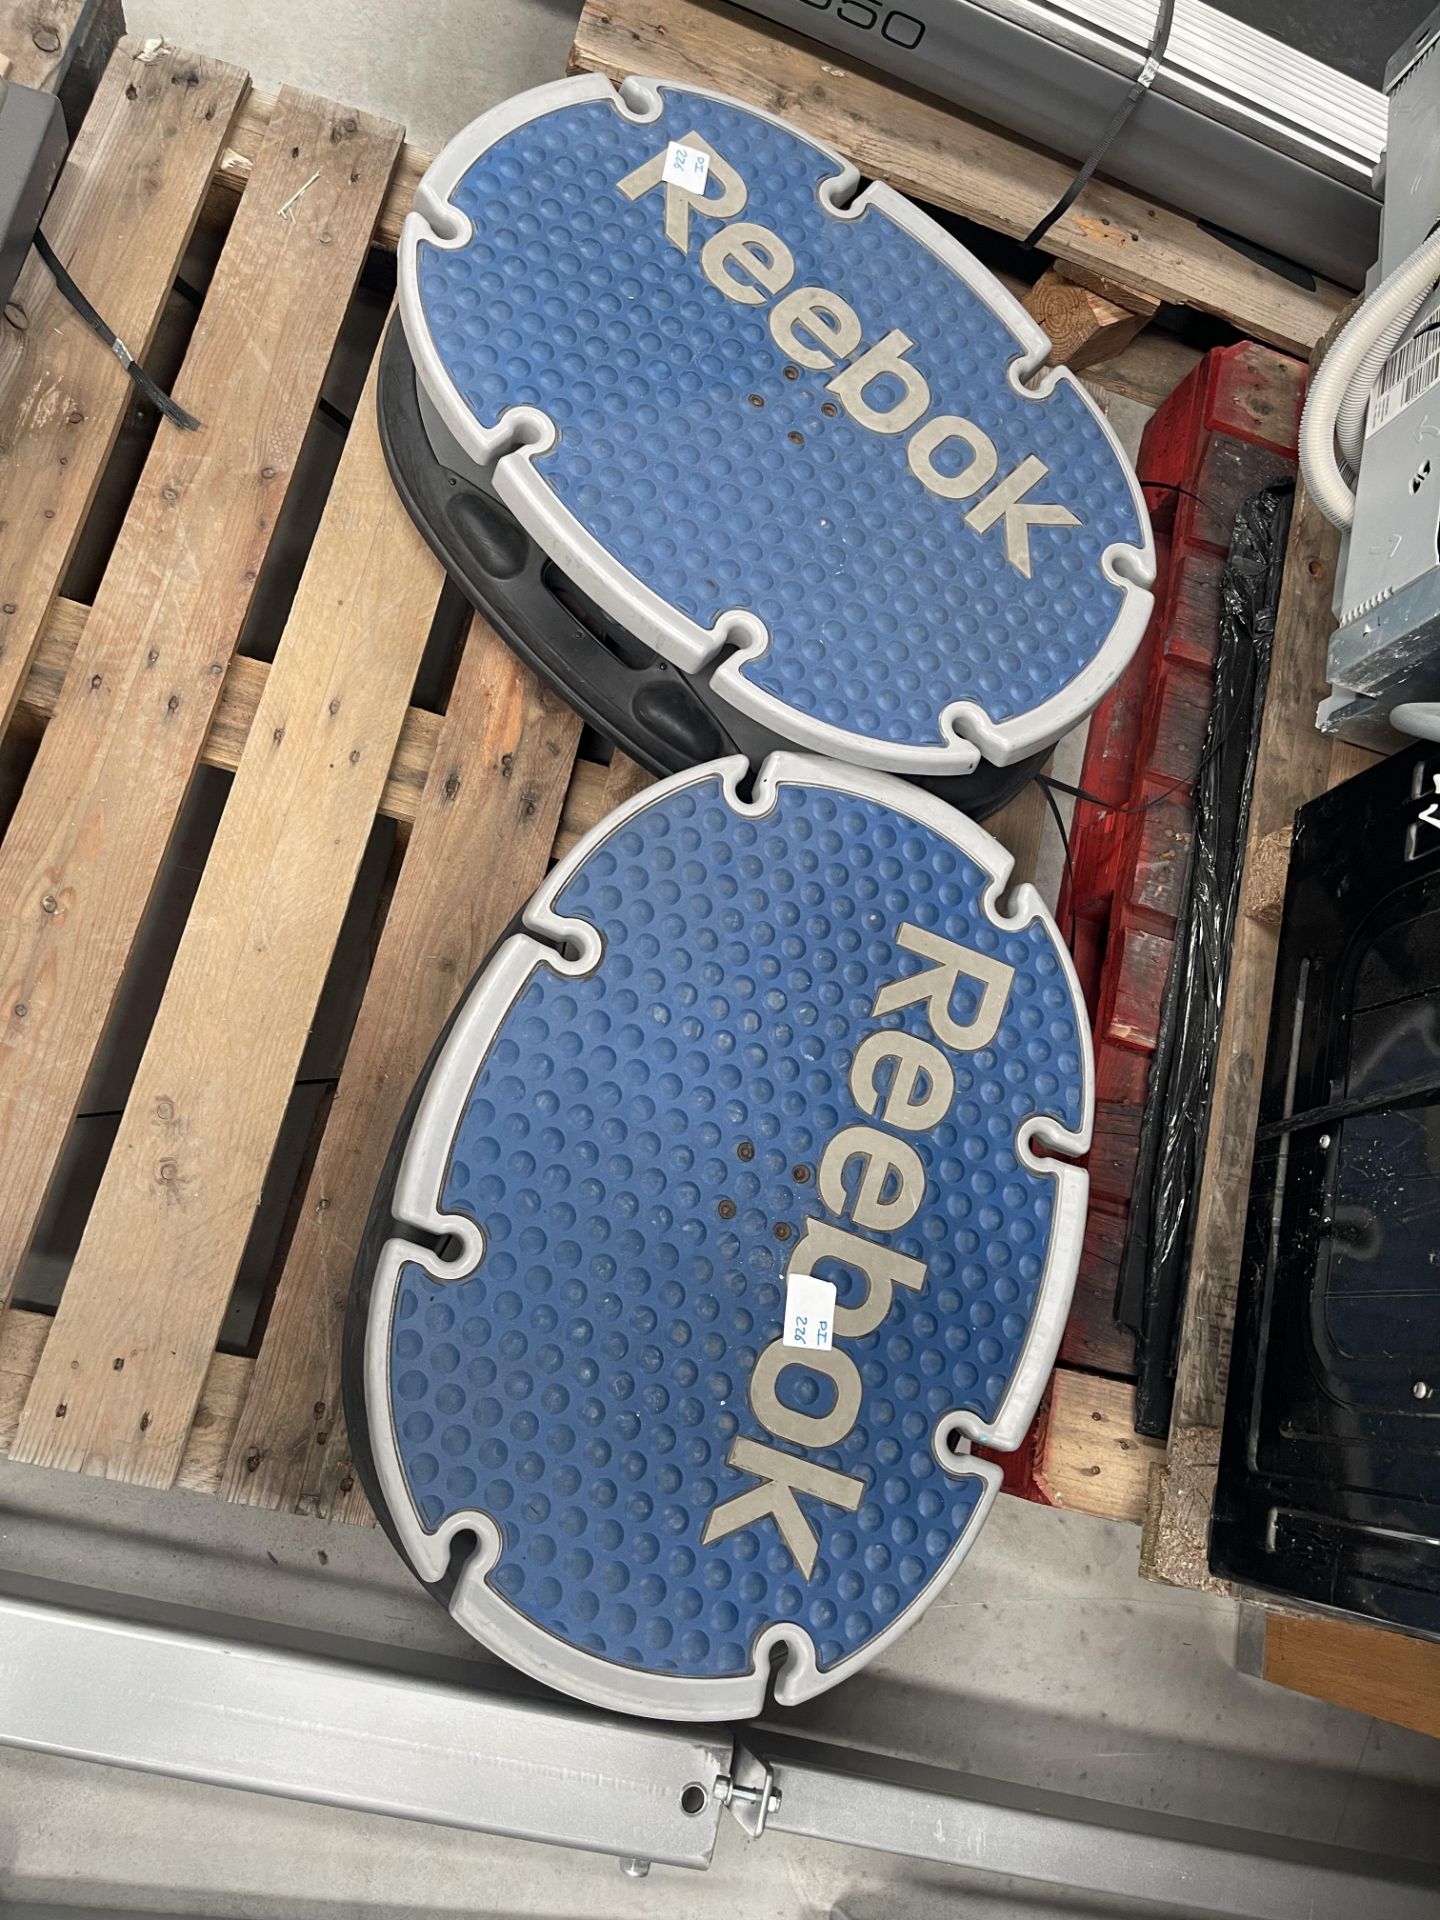 Reebok Balce Board x 2 - Image 3 of 4